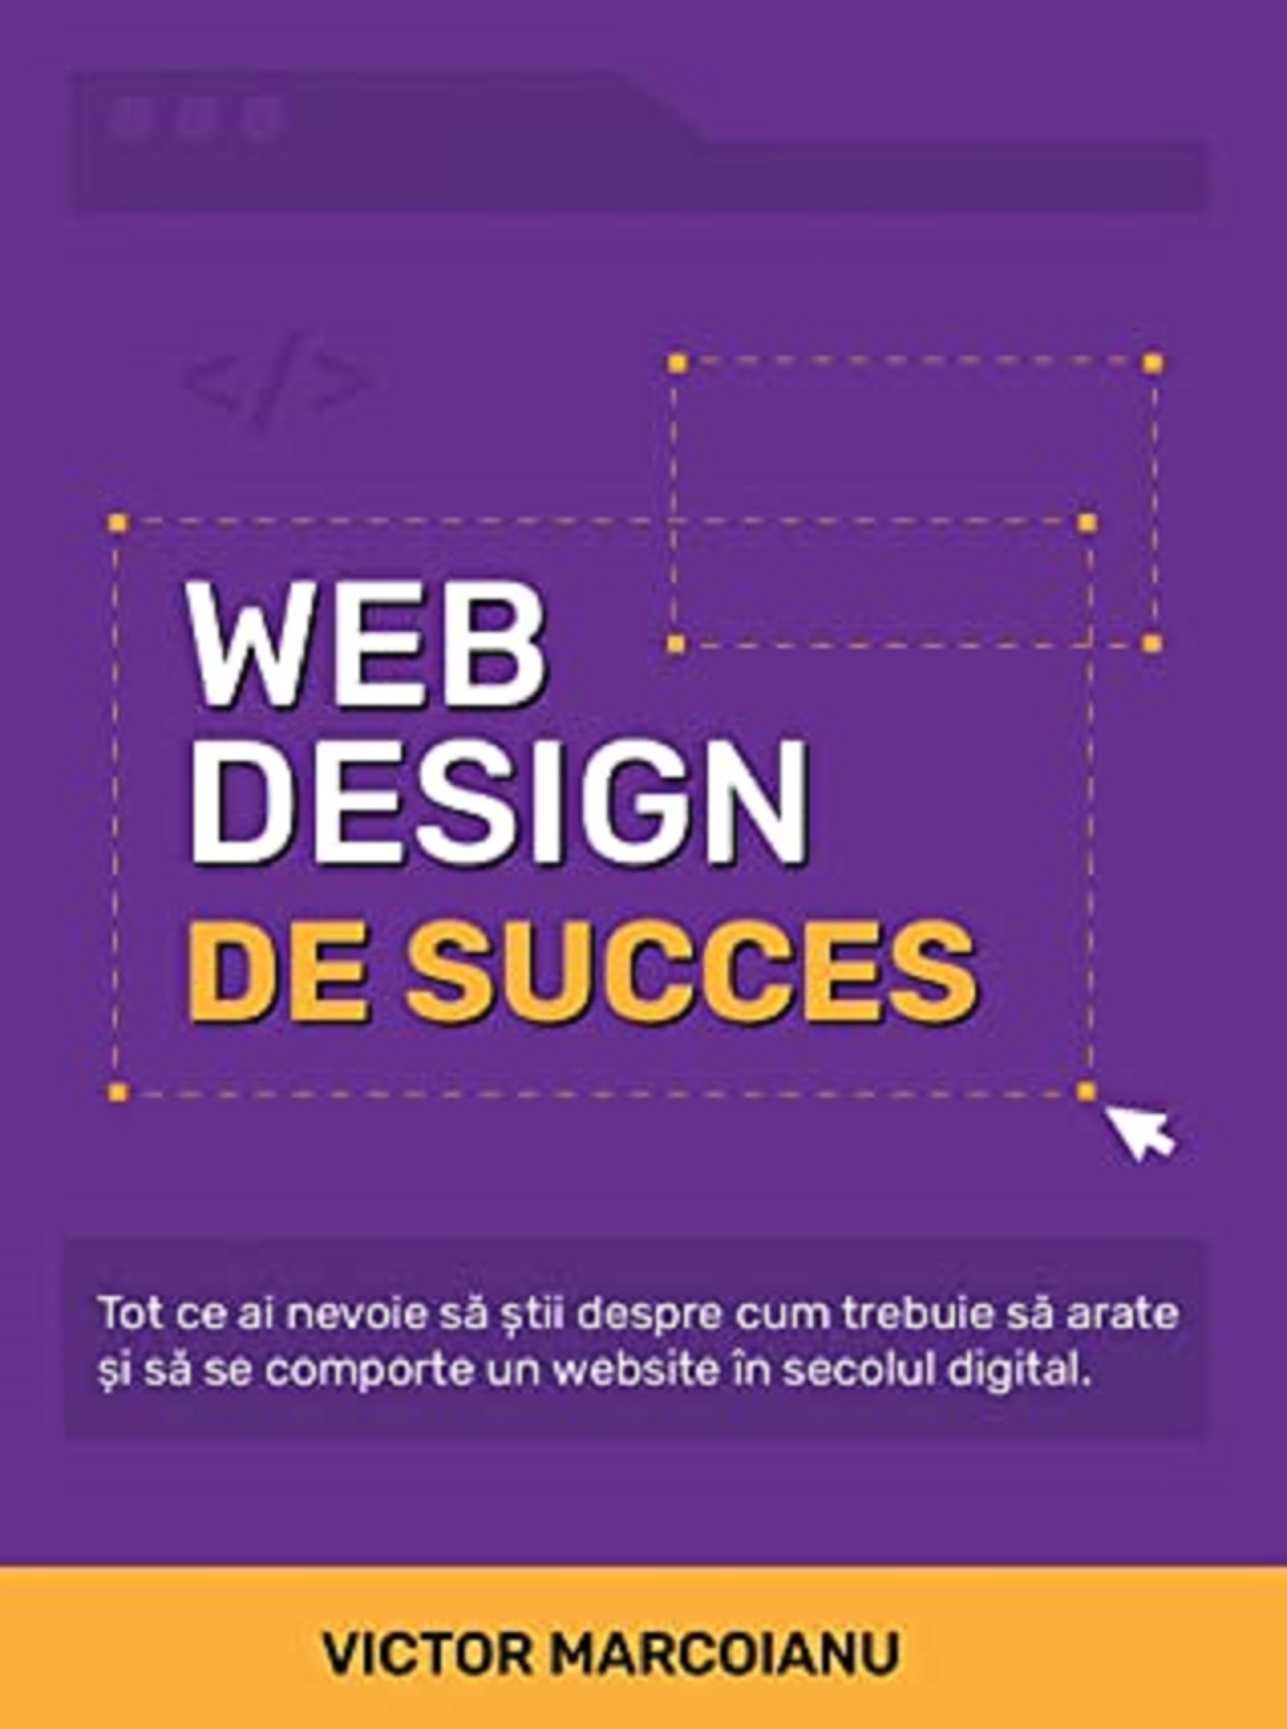 Web Design de Succes | Victor Marcoianu carturesti.ro poza bestsellers.ro